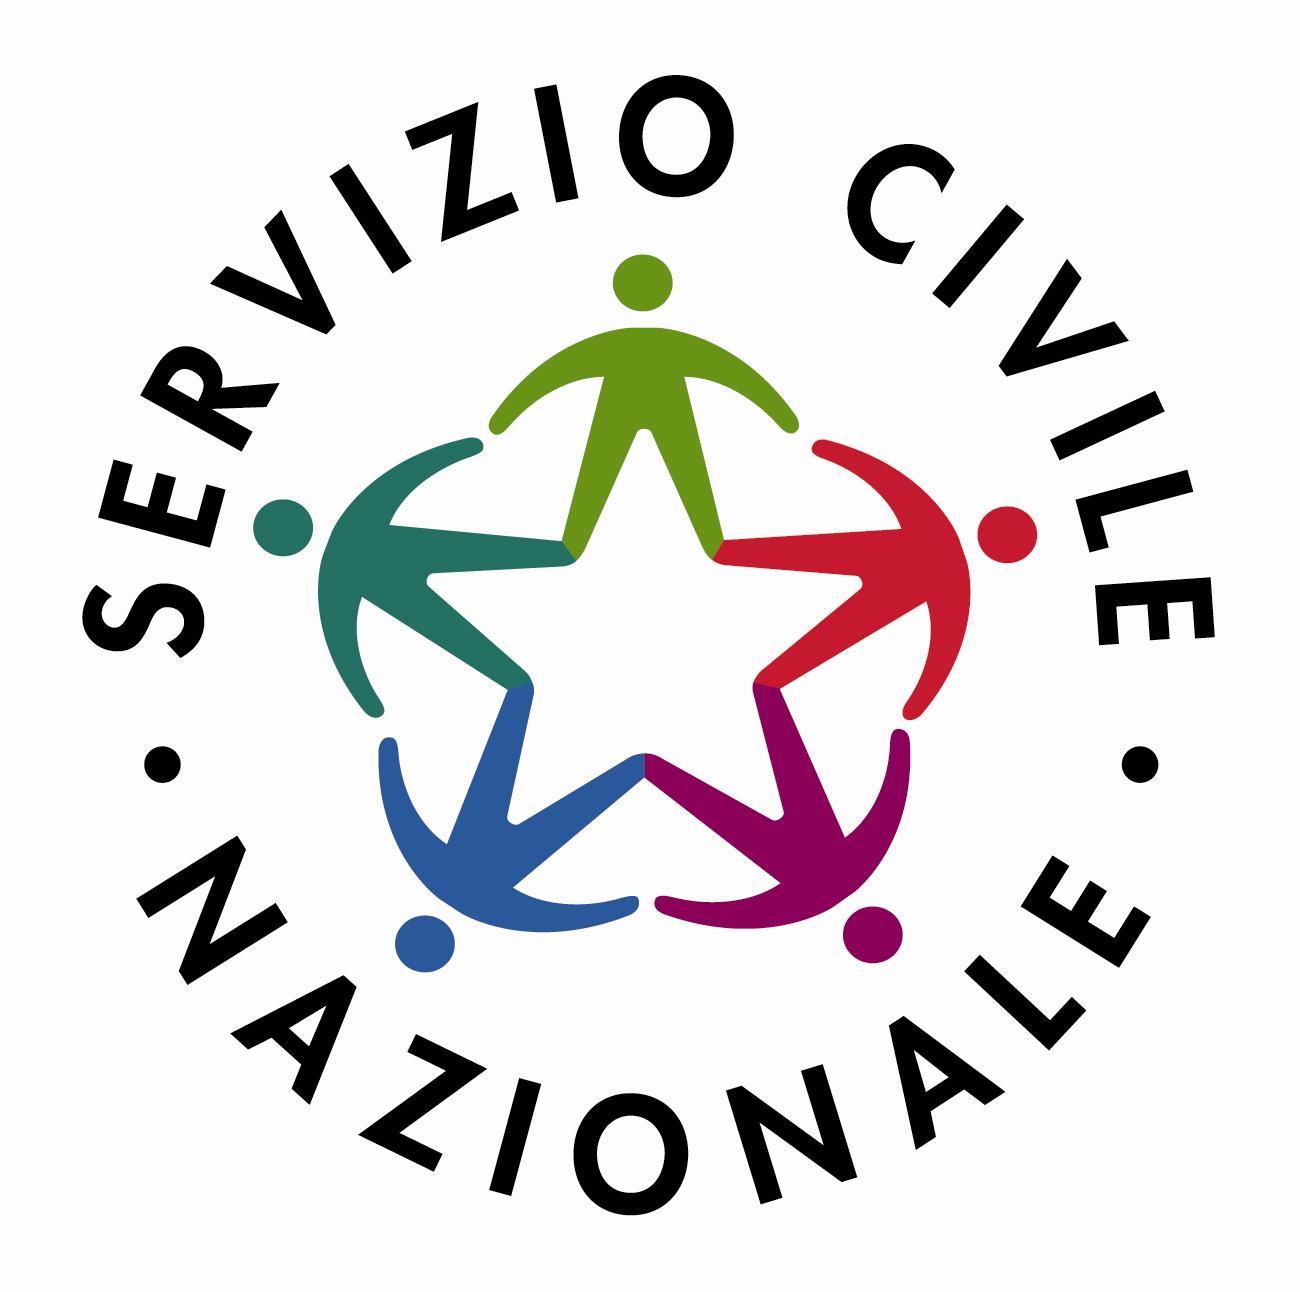 Bando di candidatura per i progetti di Servizio Civile Nazionale - scadenza 30 giugno 2016